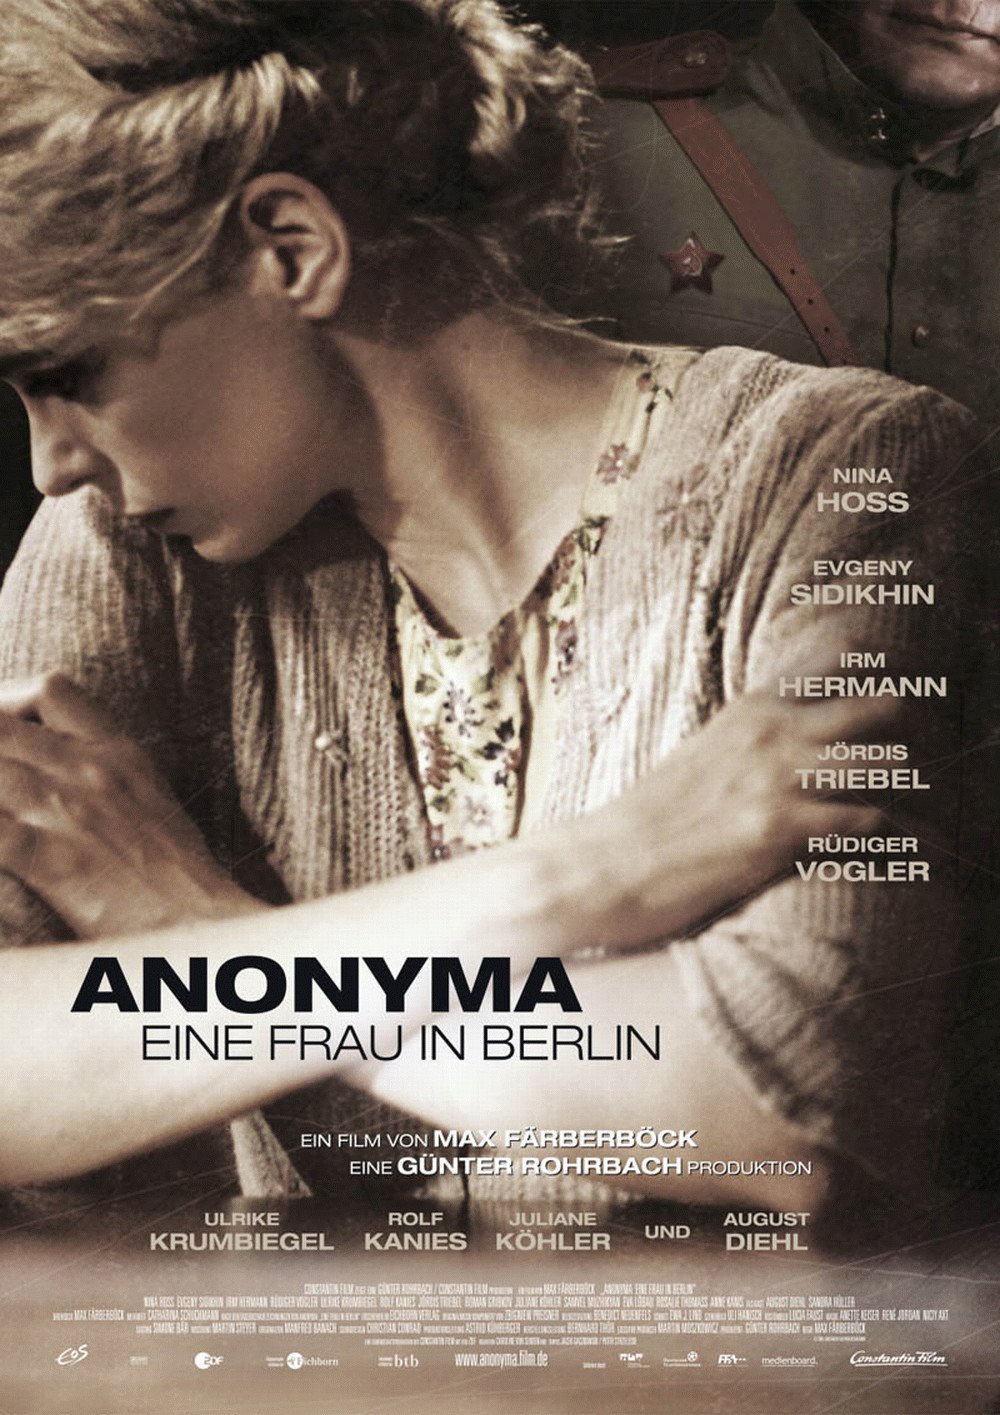 Plakat von "Anonyma - Eine Frau in Berlin"